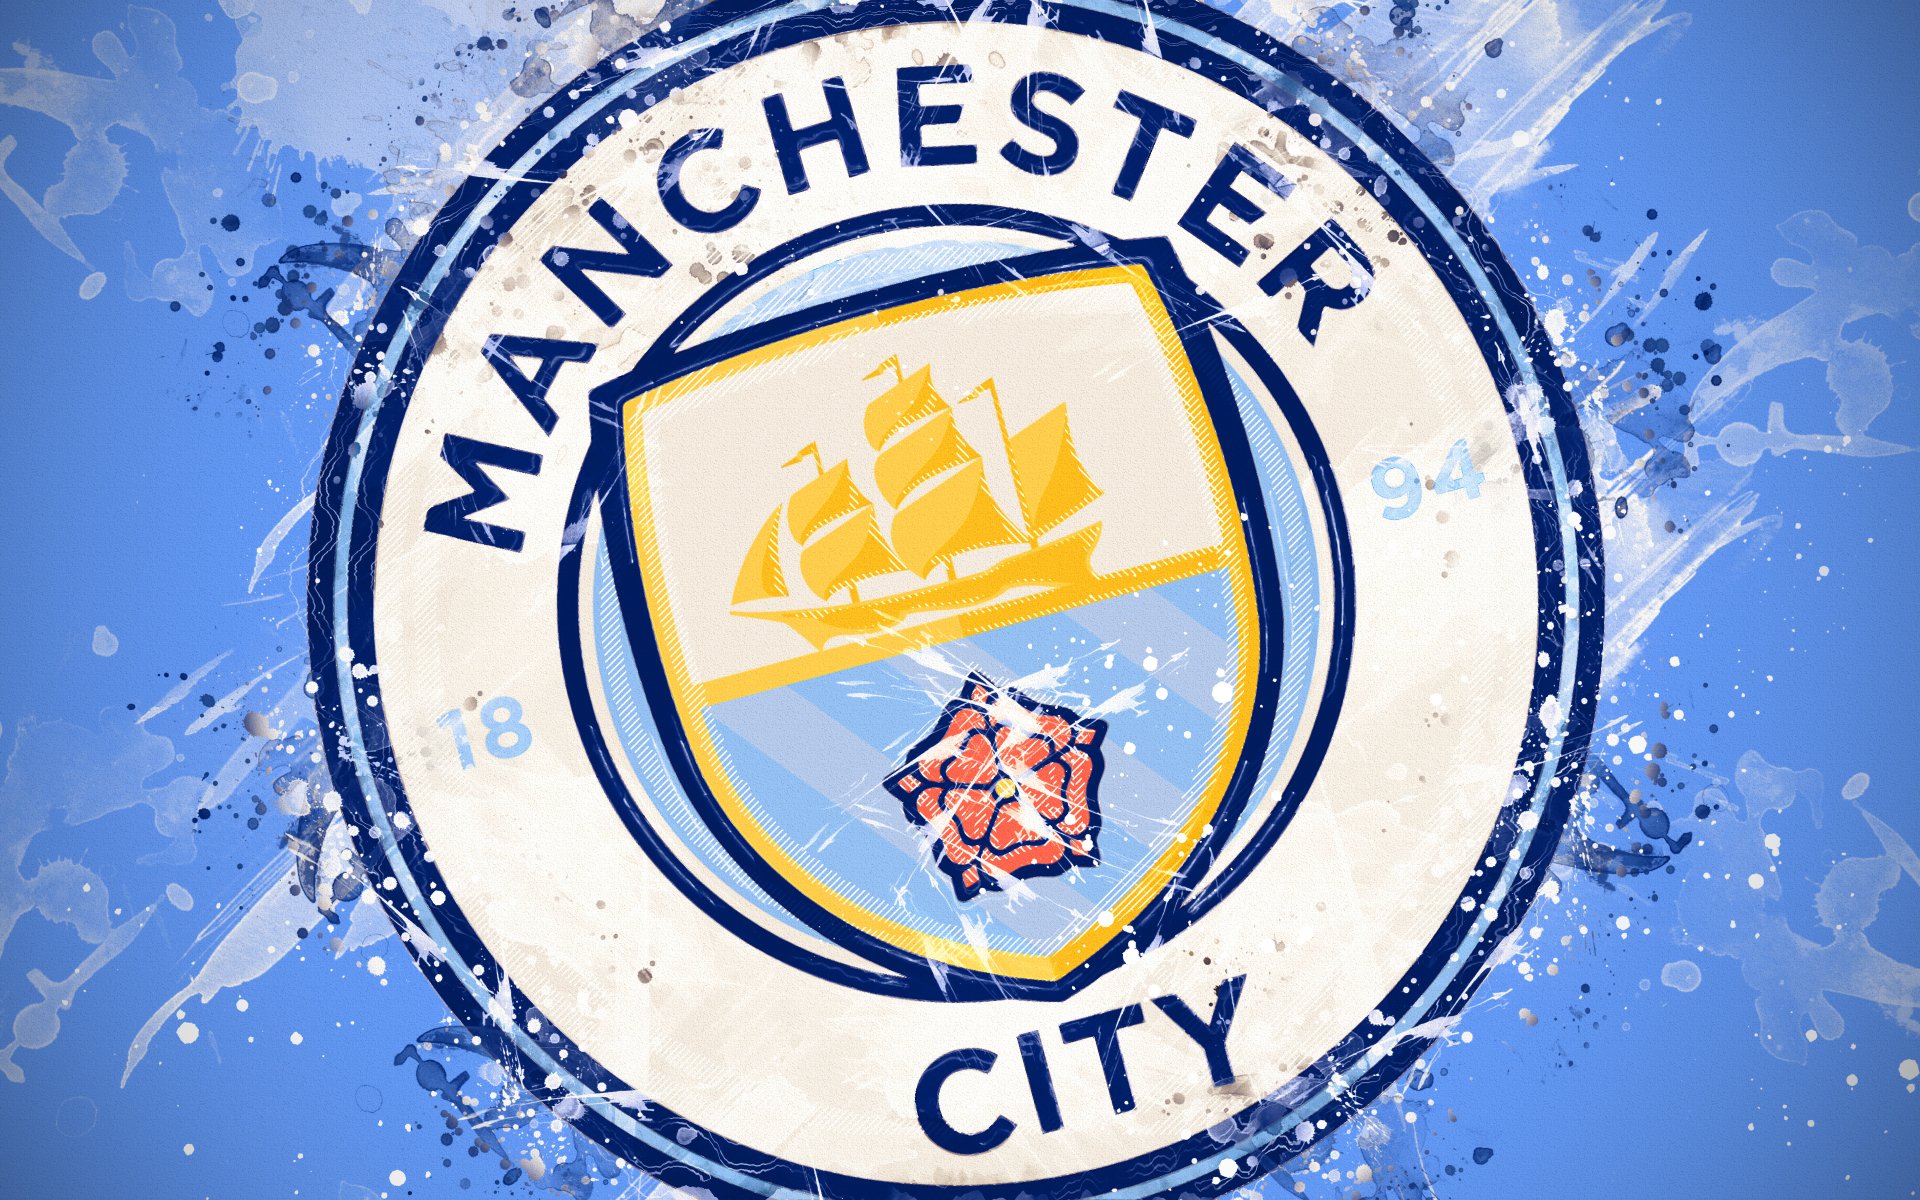 Biểu tượng Manchester City là biểu tượng được yêu thích bởi các fan hâm mộ bóng đá trên toàn thế giới. Với màu xanh sáng and sự nổi bật, biểu tượng này là biểu tượng độc quyền của CLB Manchester City. Cùng xem hình ảnh liên quan để hiểu rõ hơn những giá trị mà biểu tượng này đại diện.